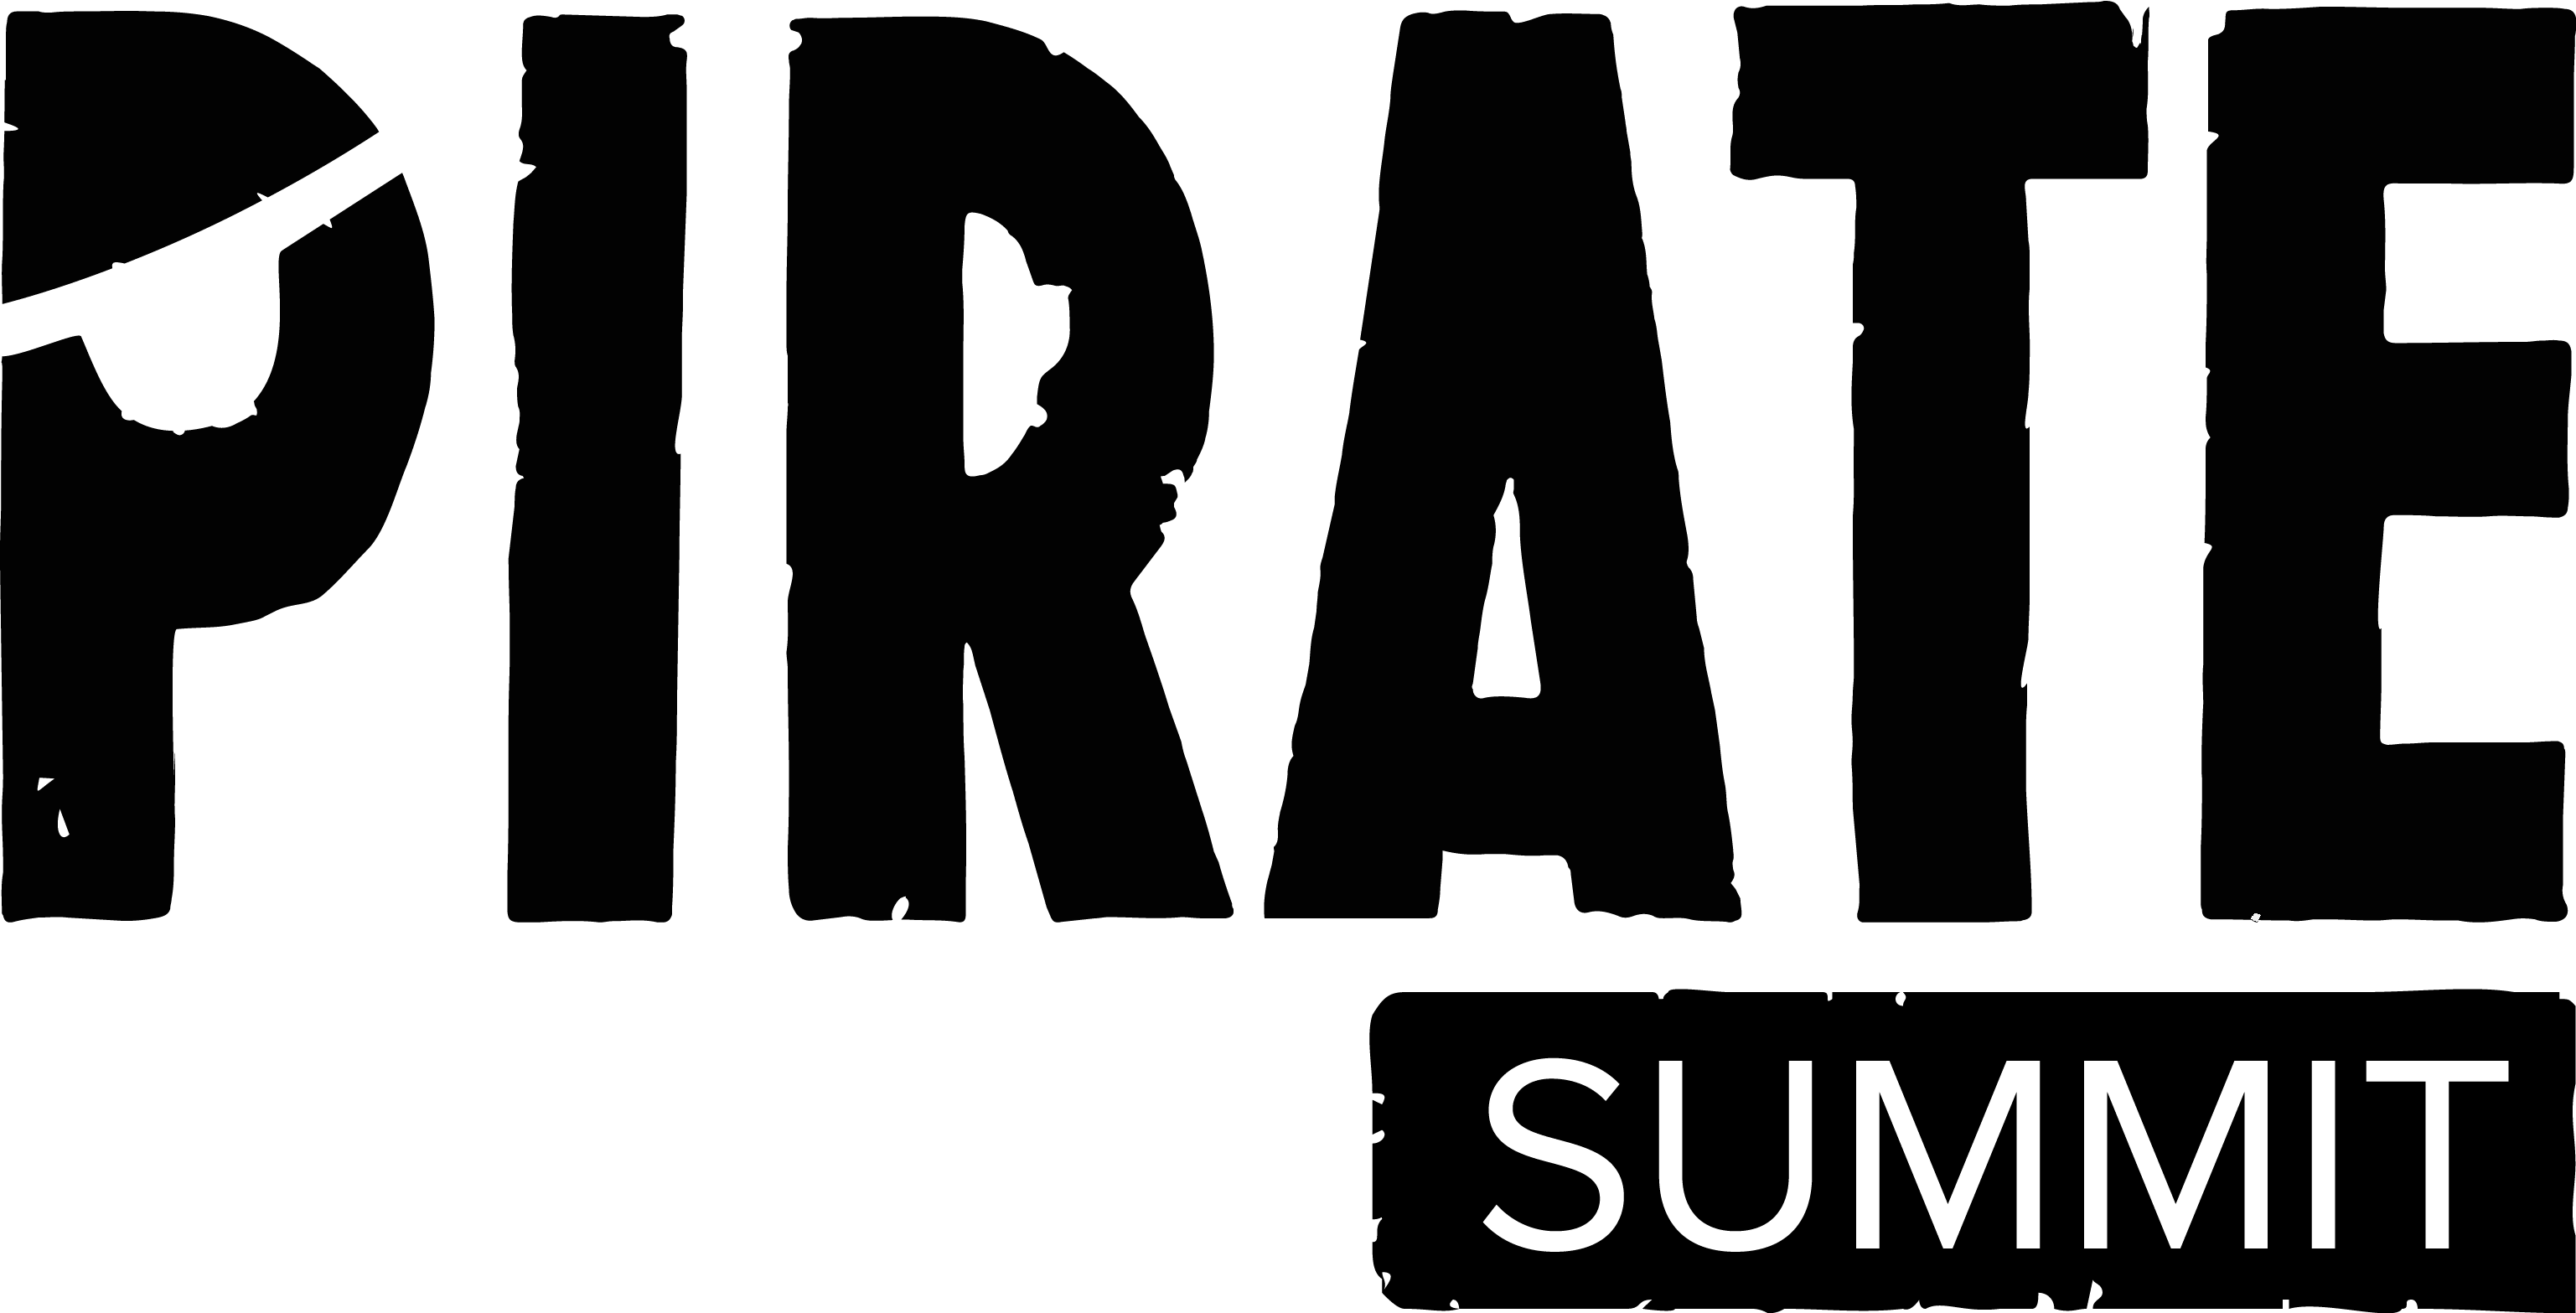 Pirate Summit 2017 im Odonien – jetzt 15 % günstiger für die Freunde der Gründerfreunde!